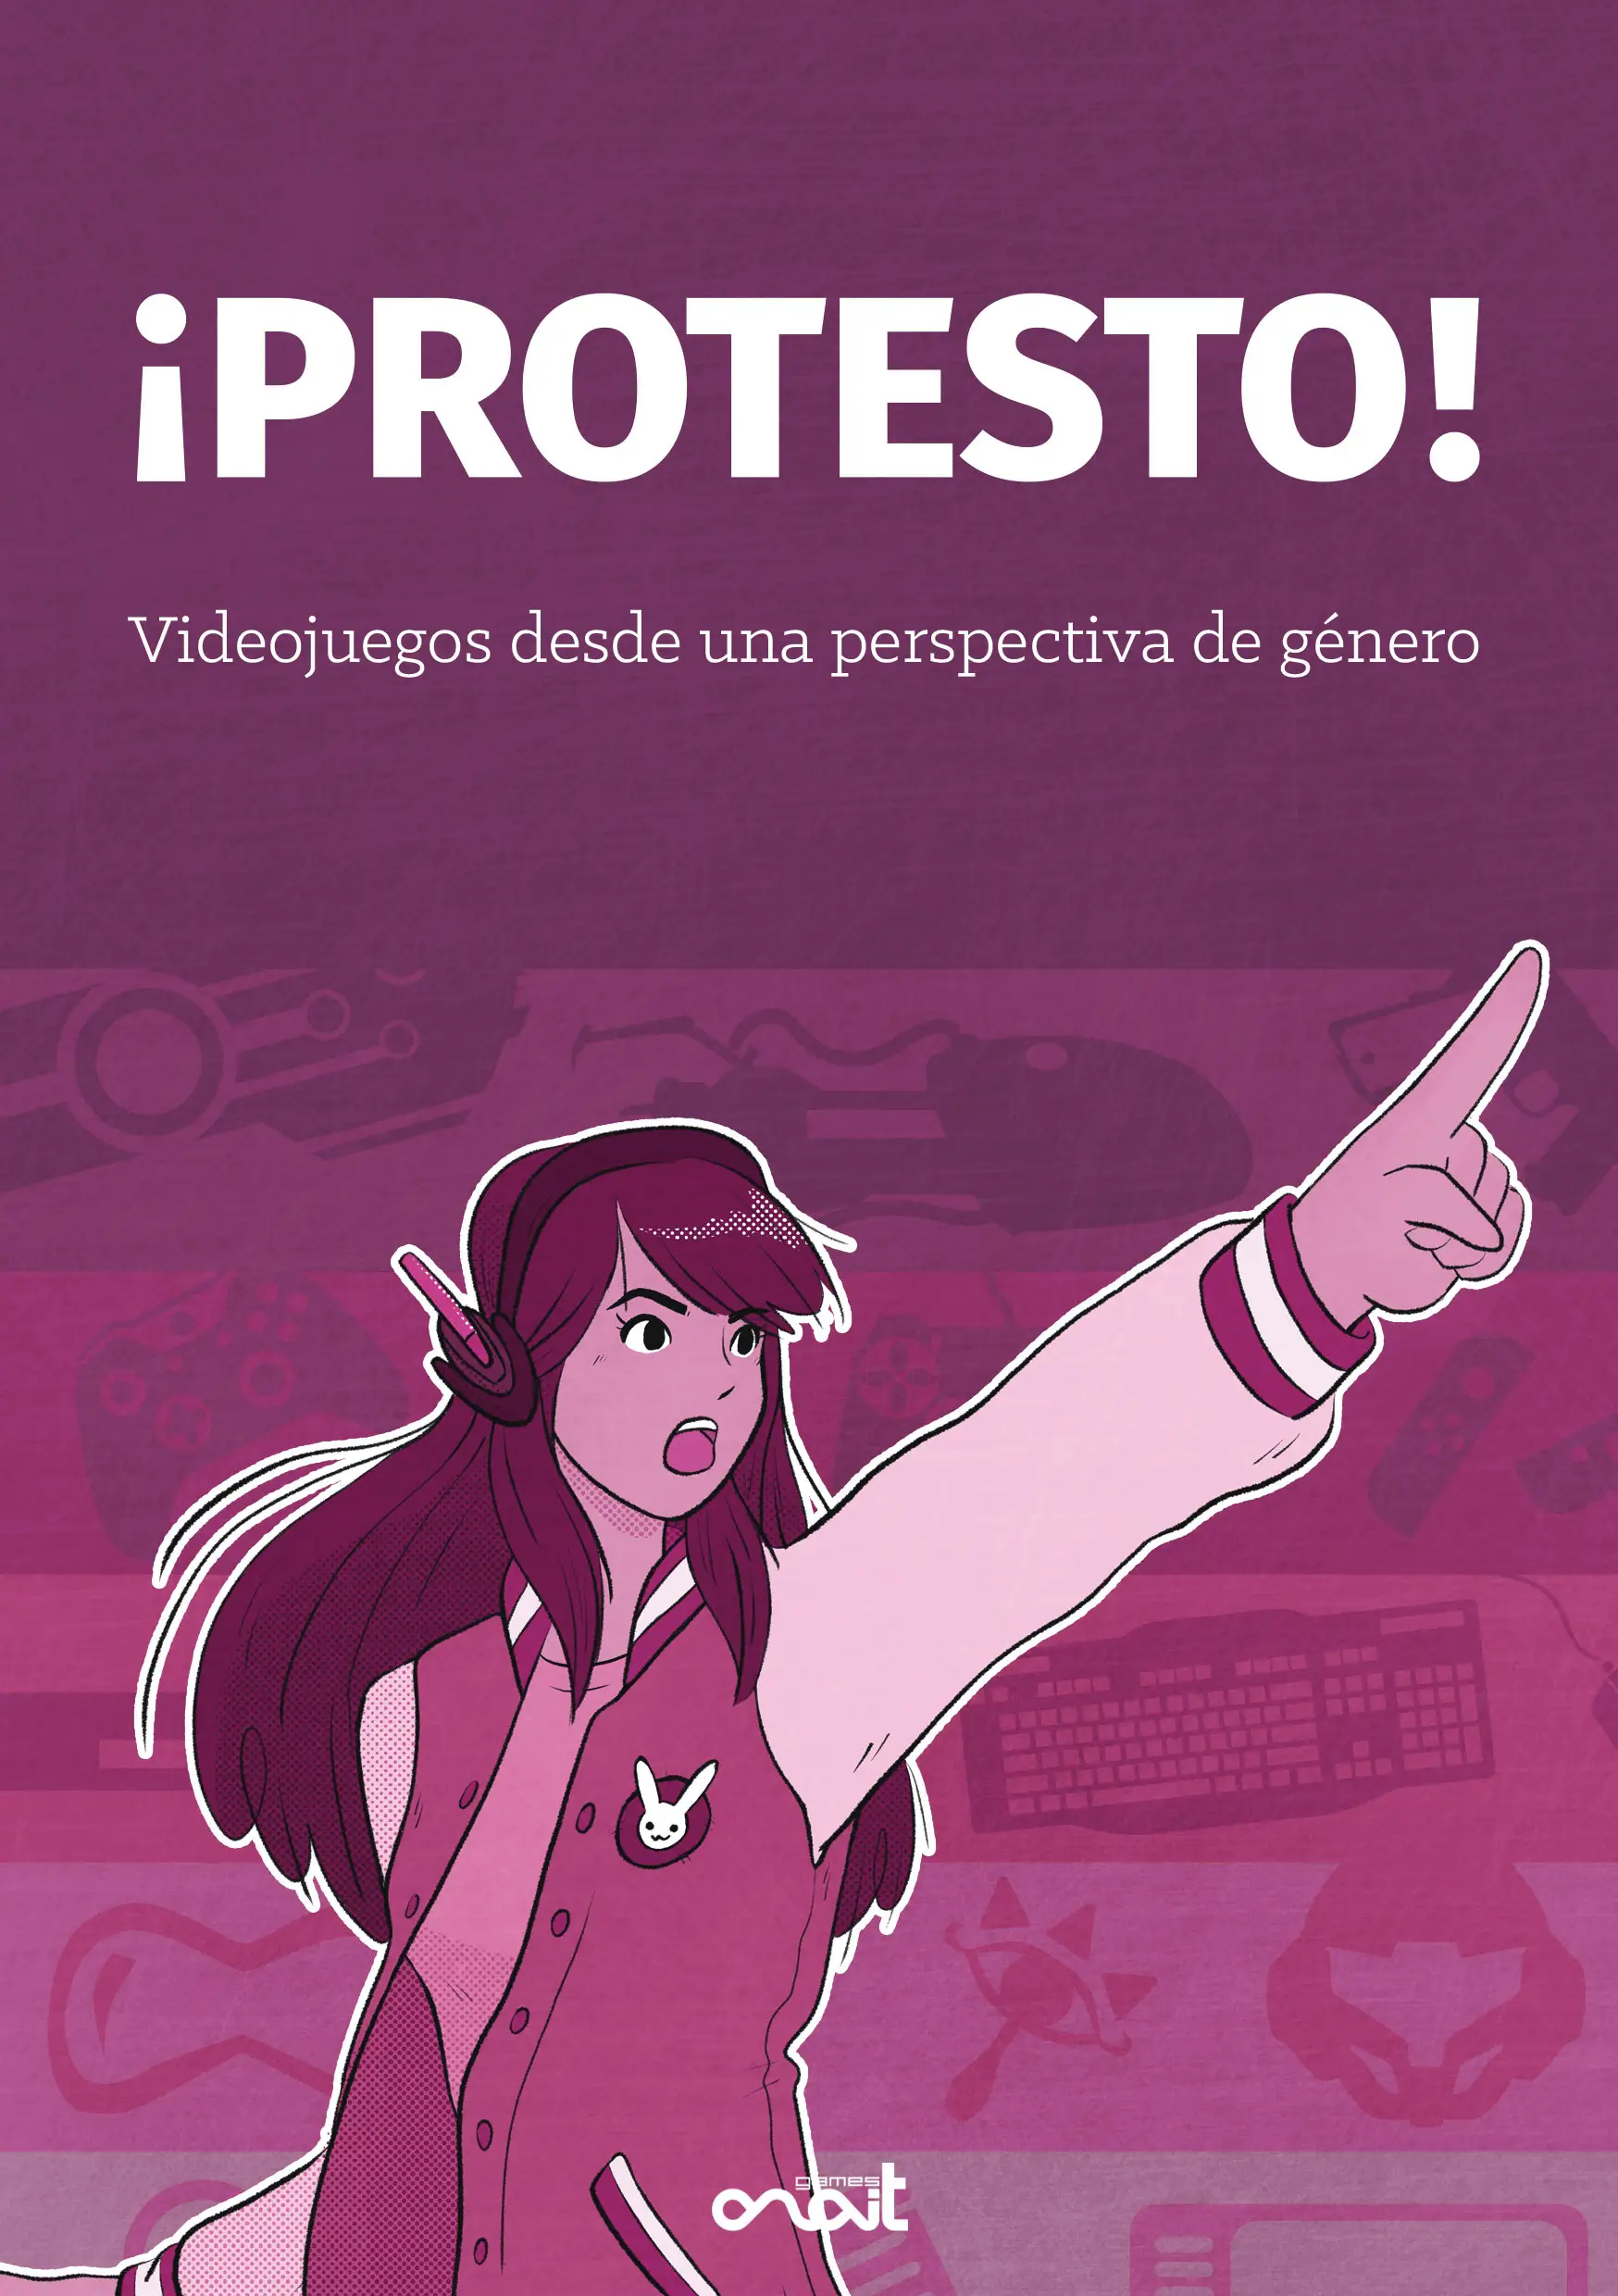 ¡Protesto!: Videojuegos desde una perspectiva de género